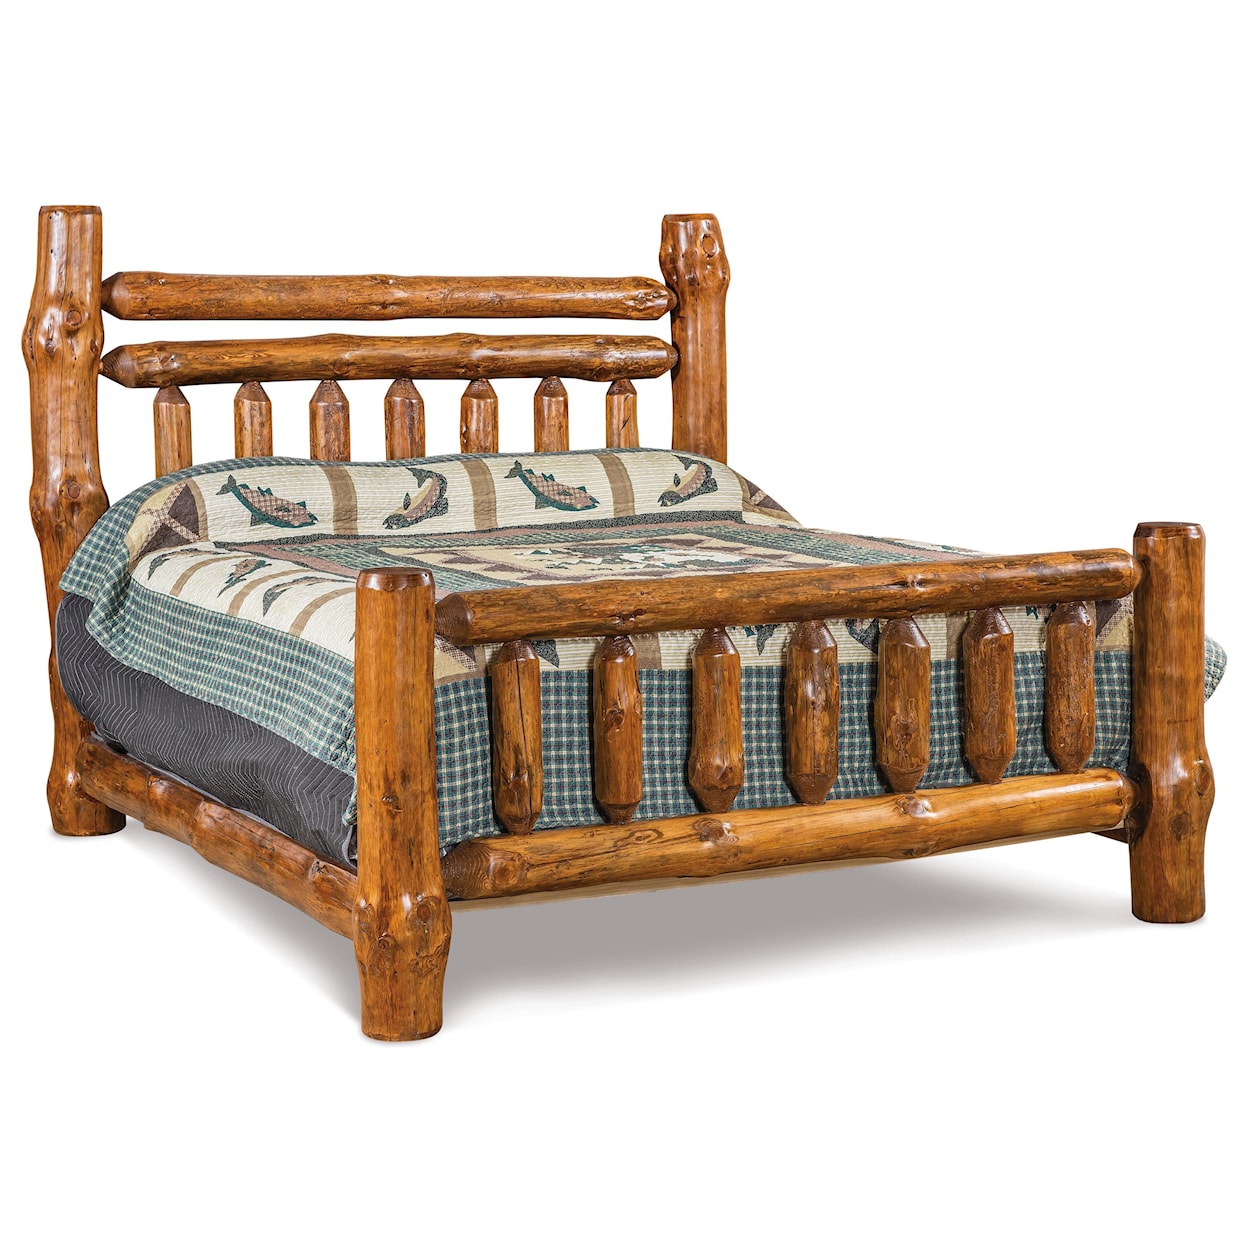 Fireside Log Furniture Log Bedroom King Double Rail Bed